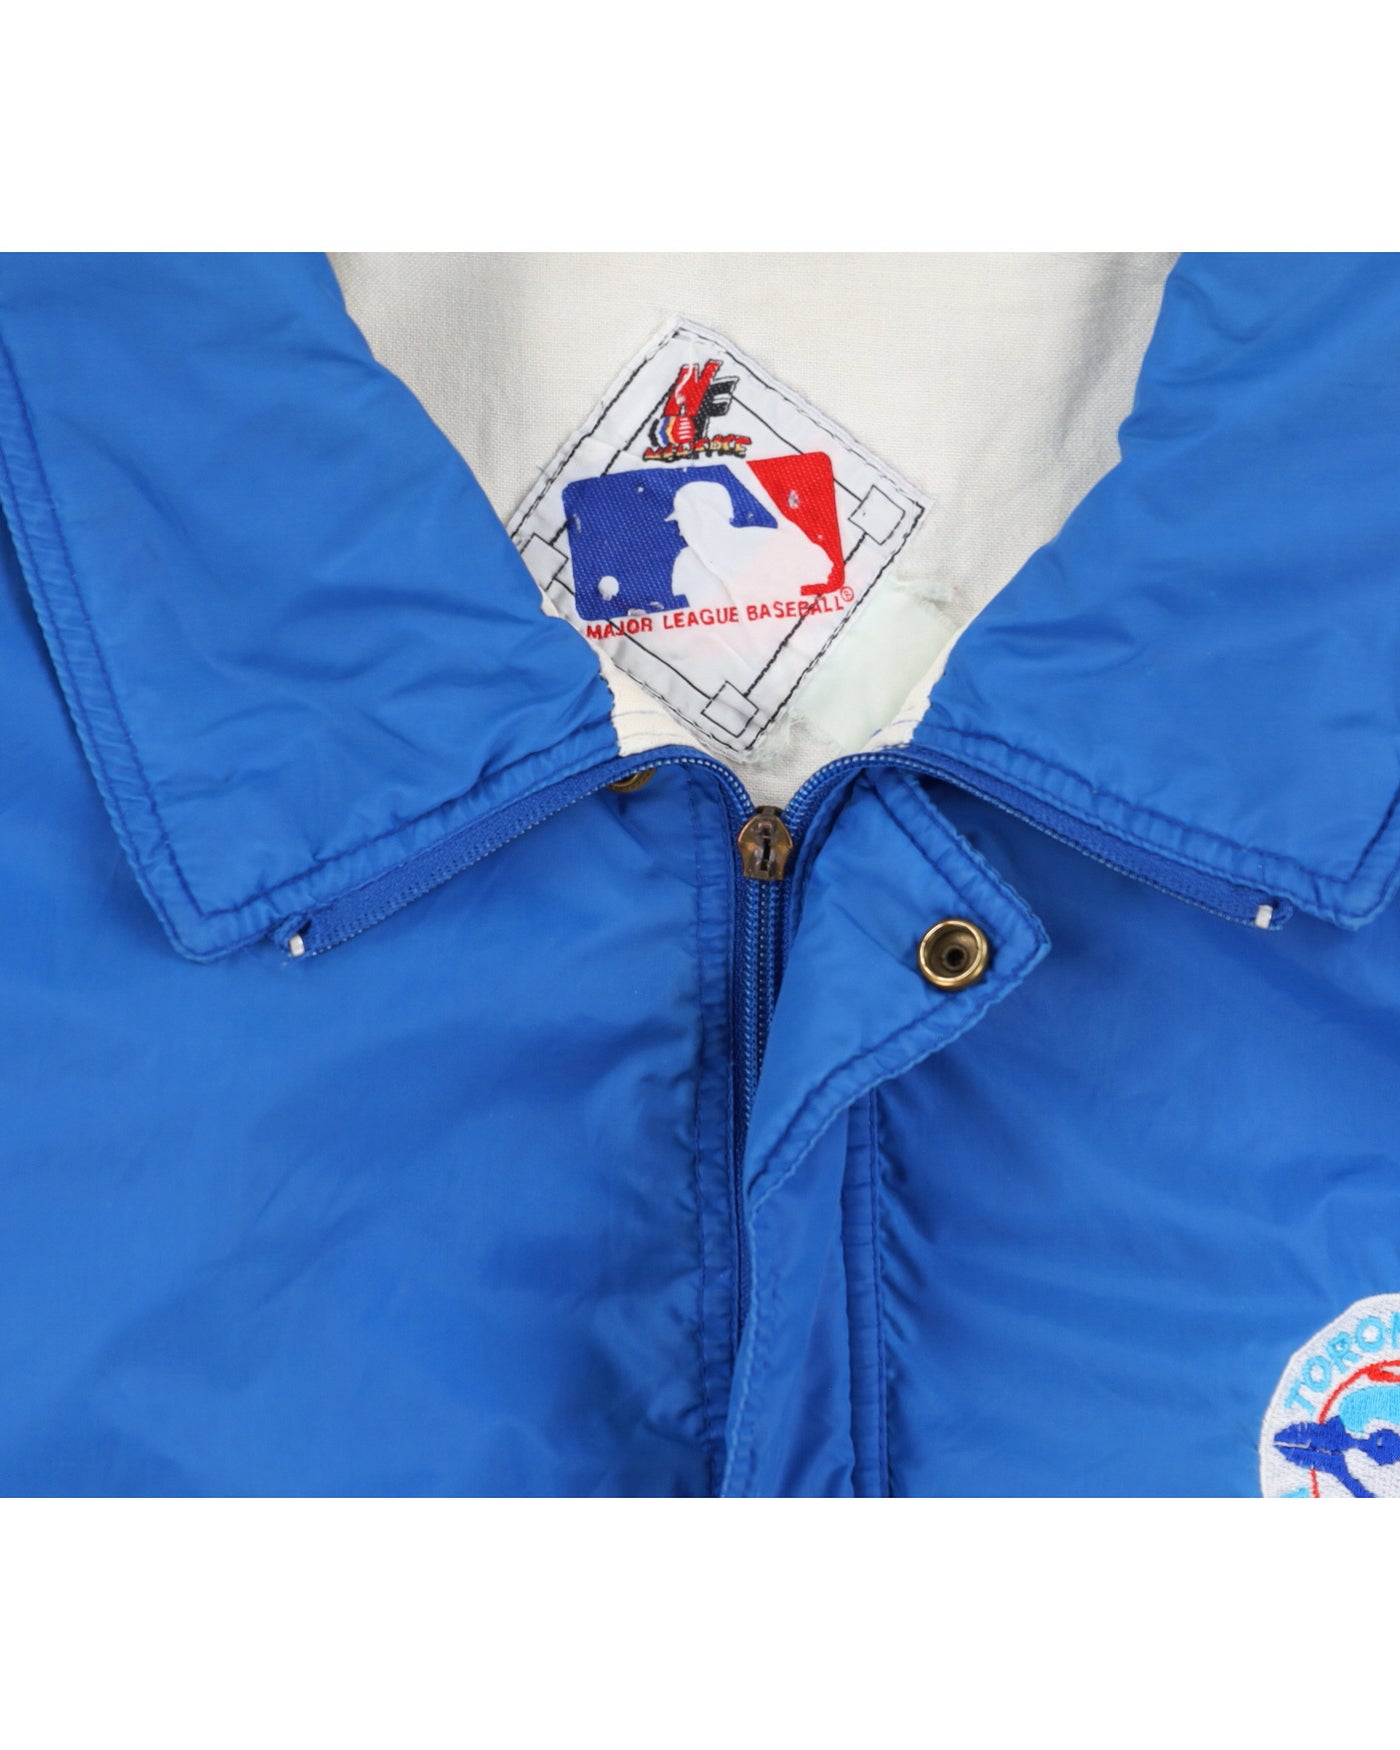 Vintage 90s MLB x New Face Blue Jays Toronto Blue Jacket - XXL